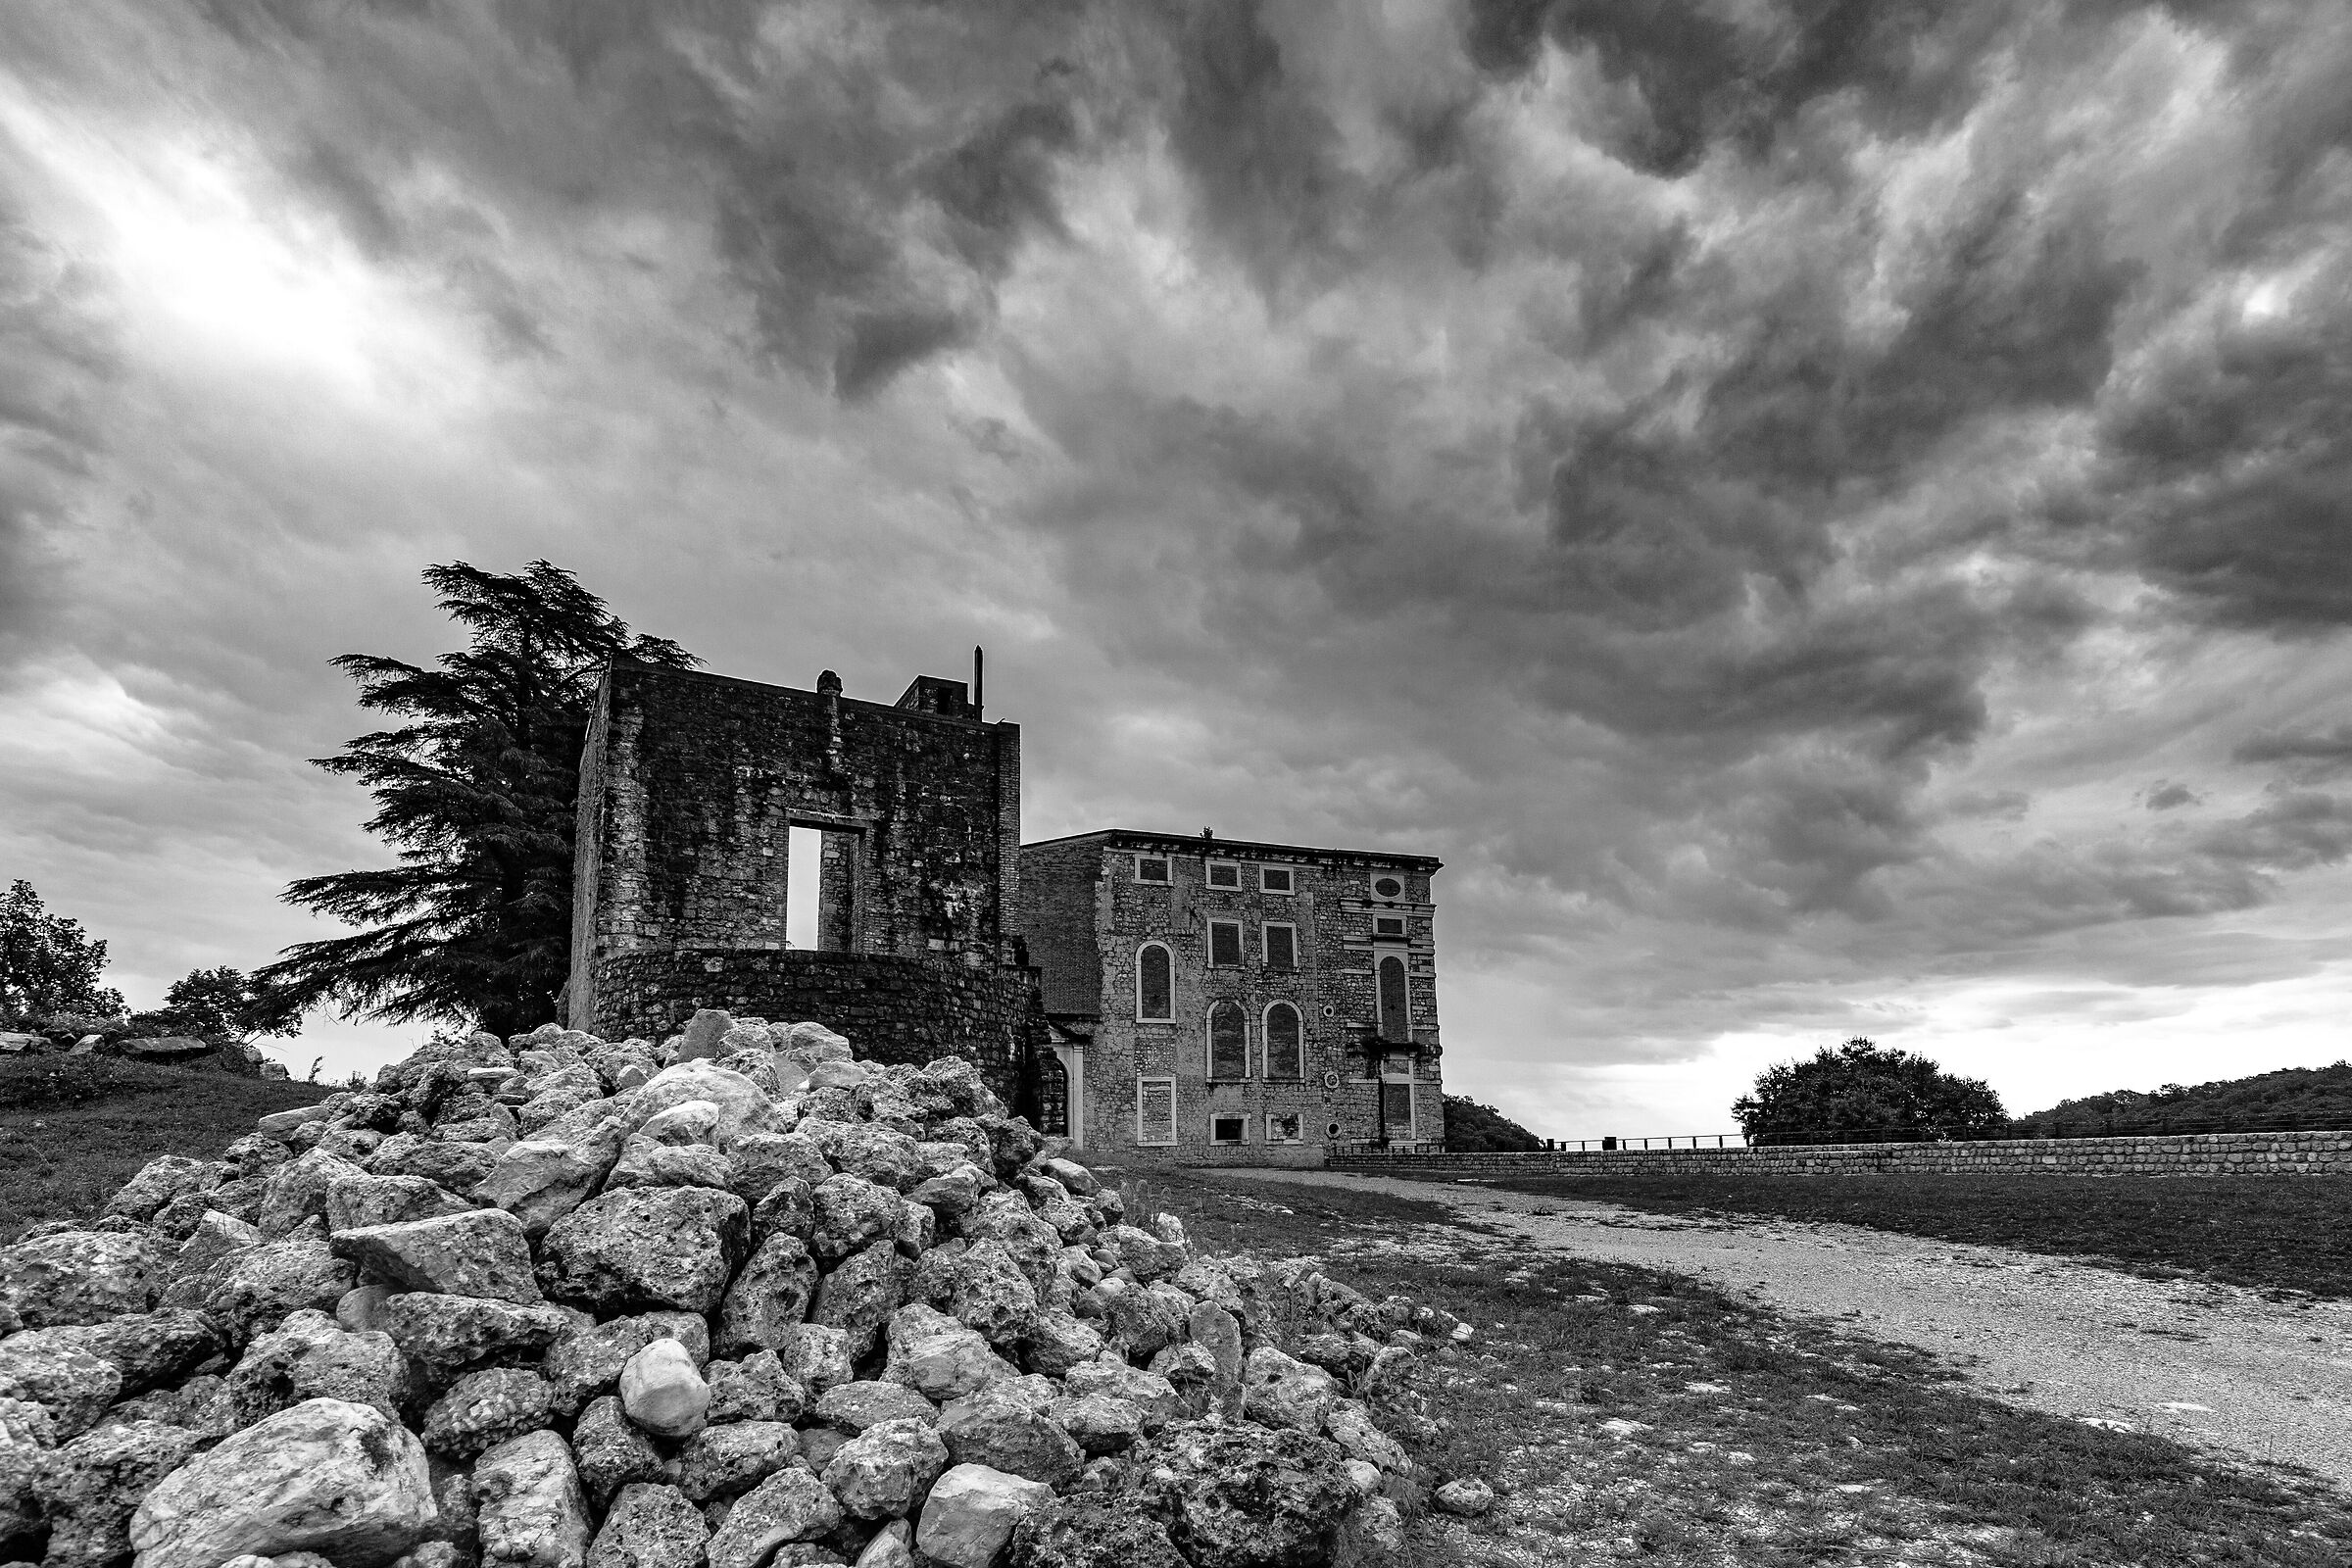 What remains, Polcenigo Castle....